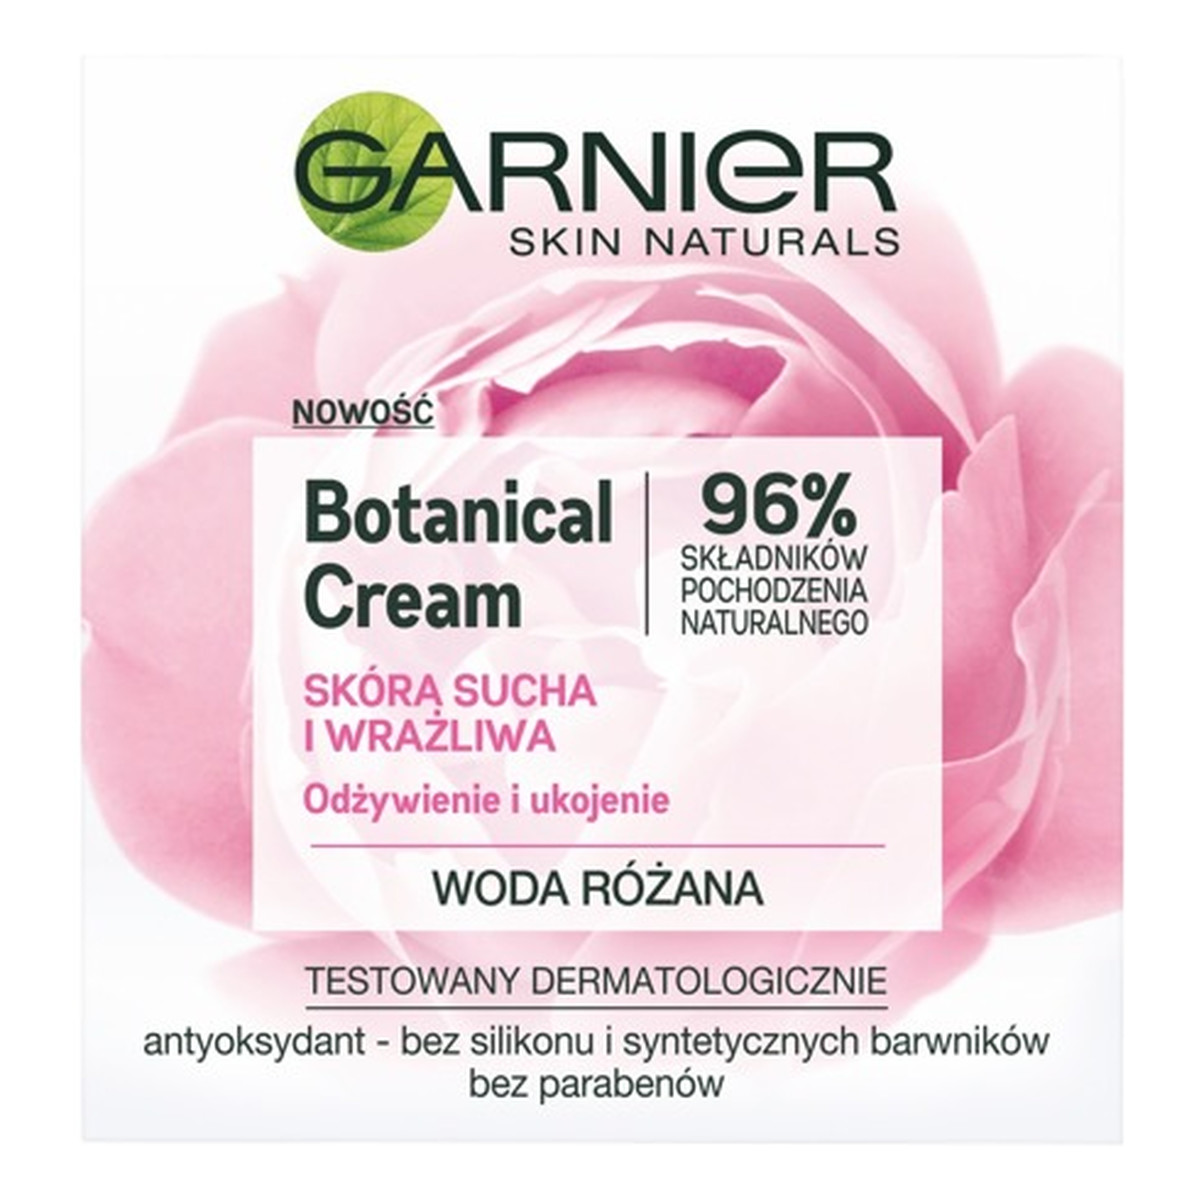 Garnier Skin Naturals Botanical Rose Krem odżywienie i ukojenie 50ml